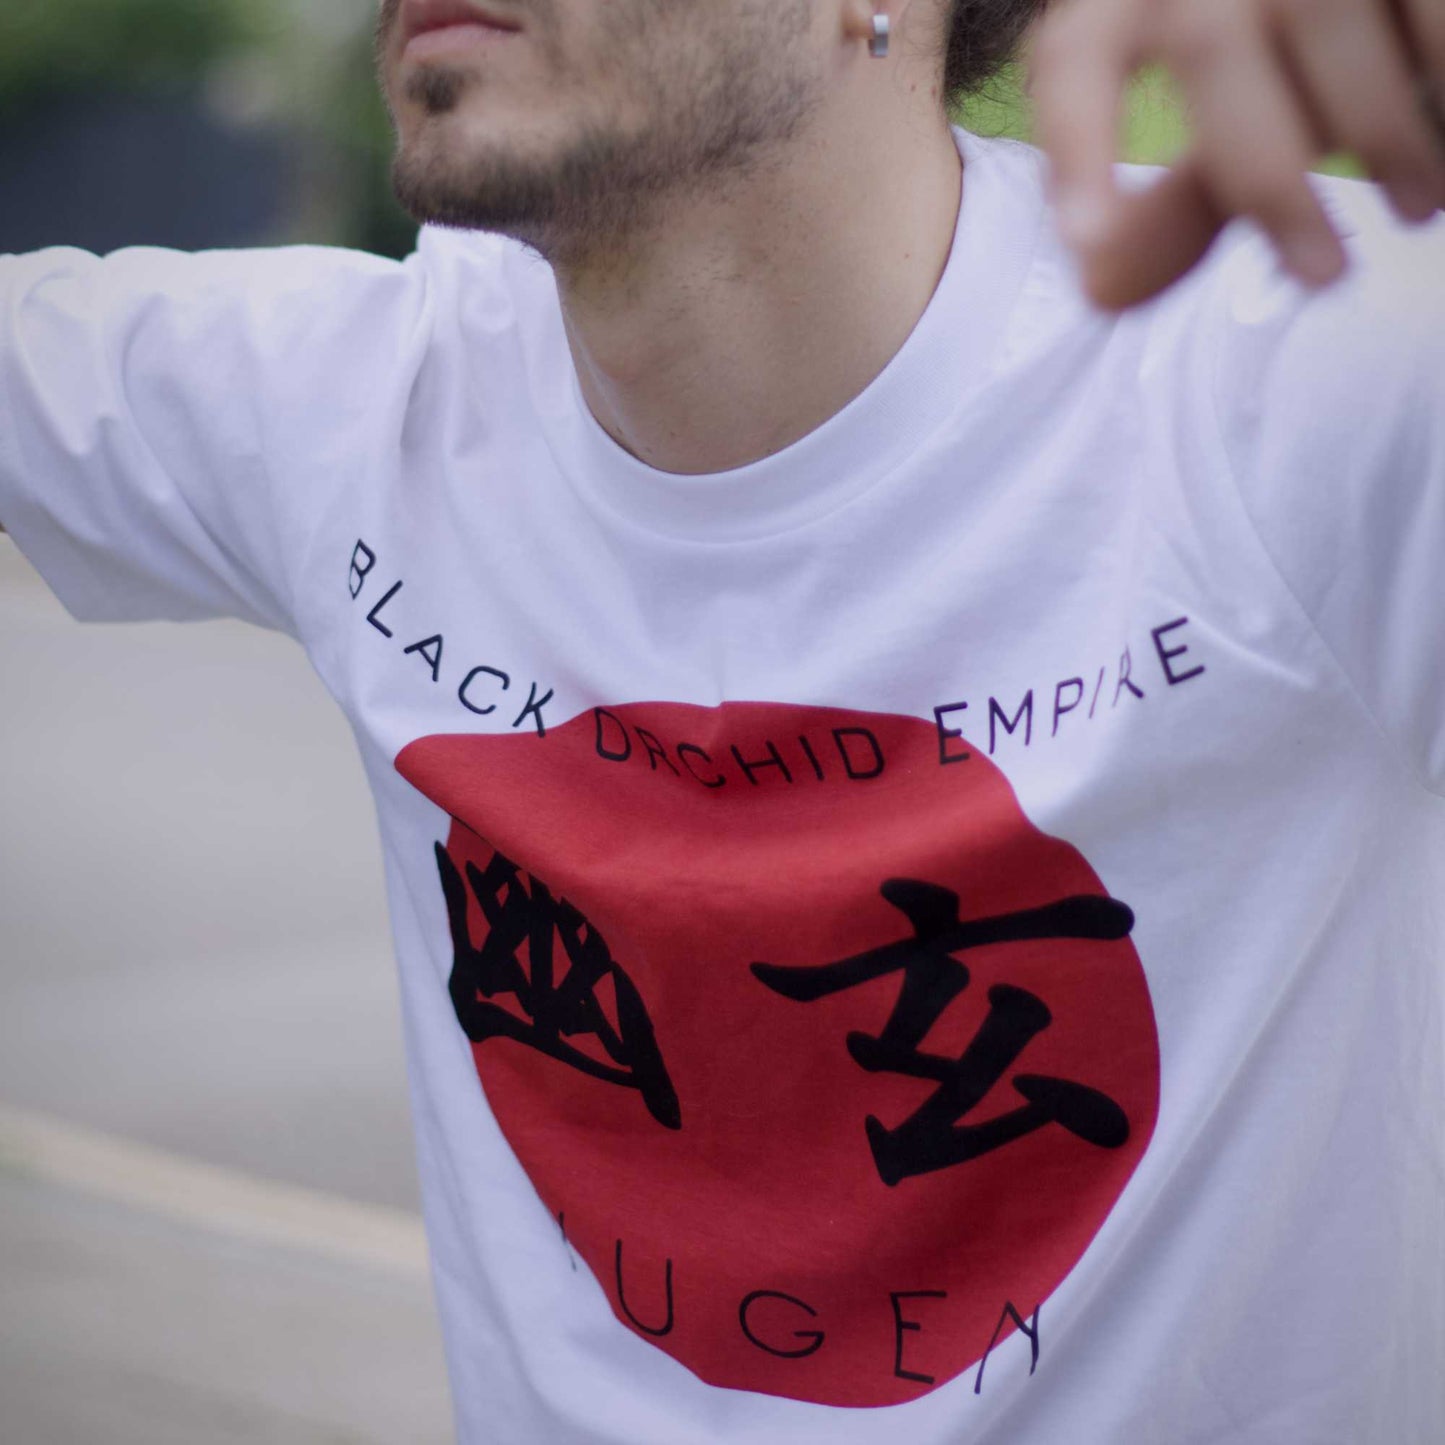 T-Shirt: Yugen Kanji Flag